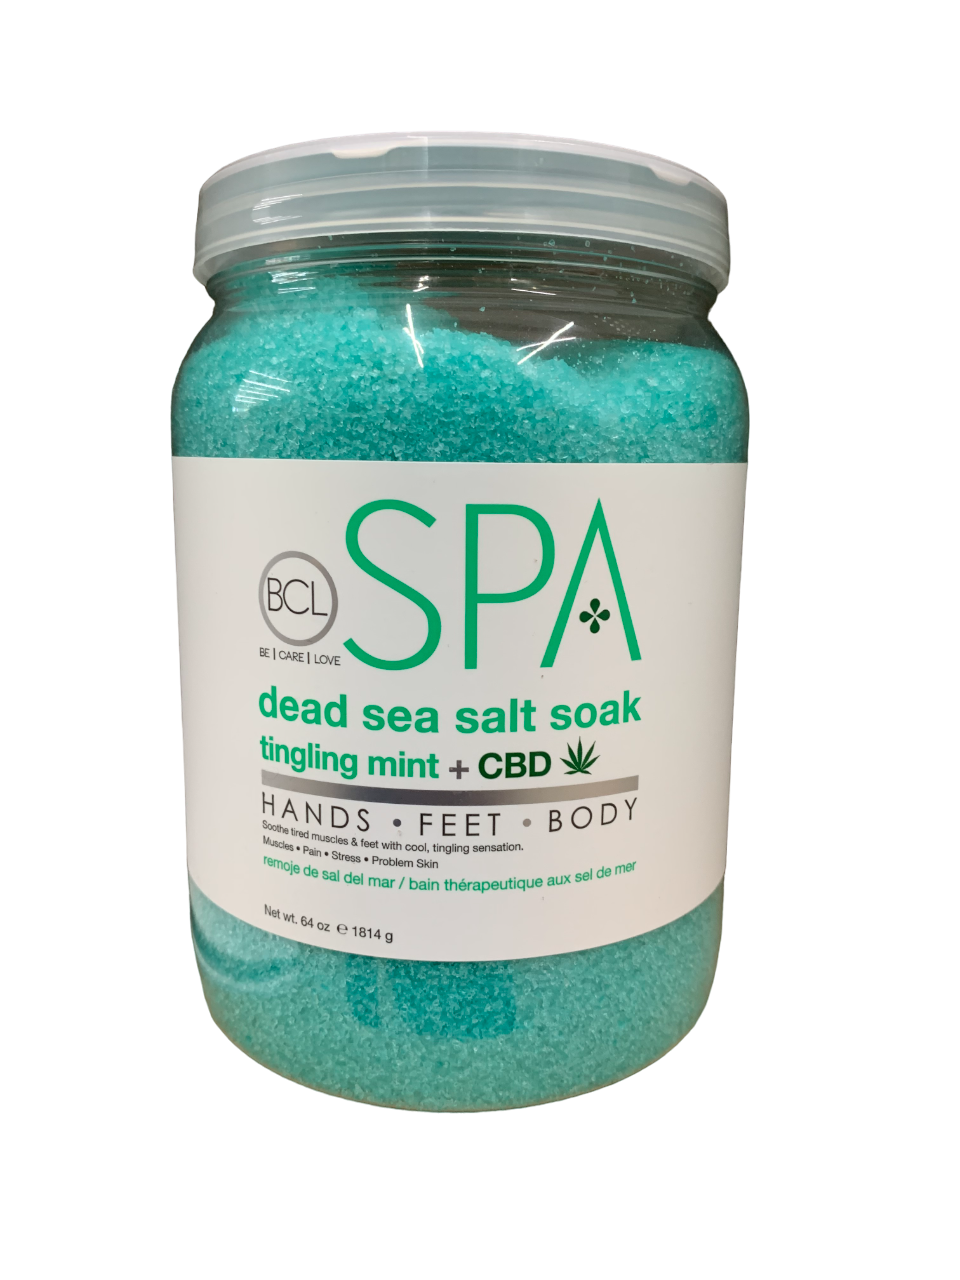 BCL Spa Dead Sea Salt Soak Tingling Mint CBD